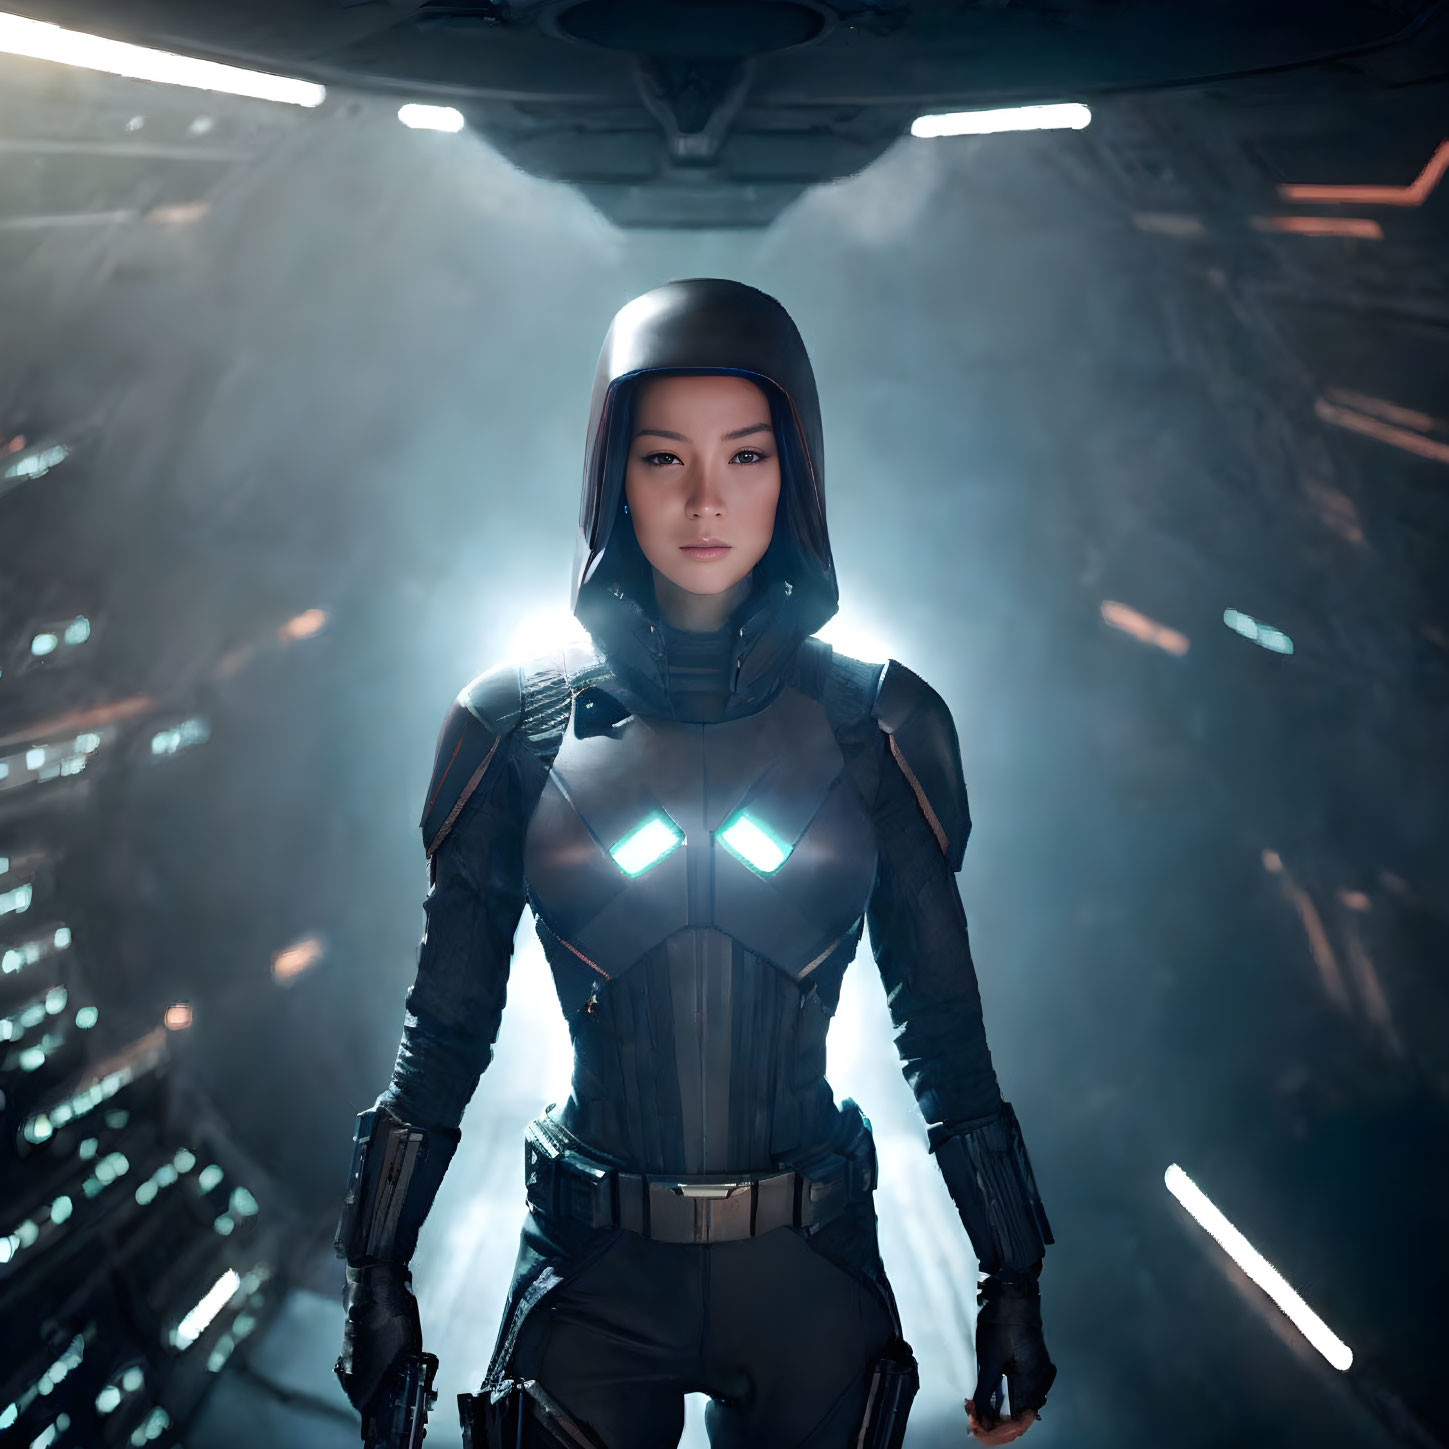 Futuristic armored woman in sci-fi corridor with glowing blue lights